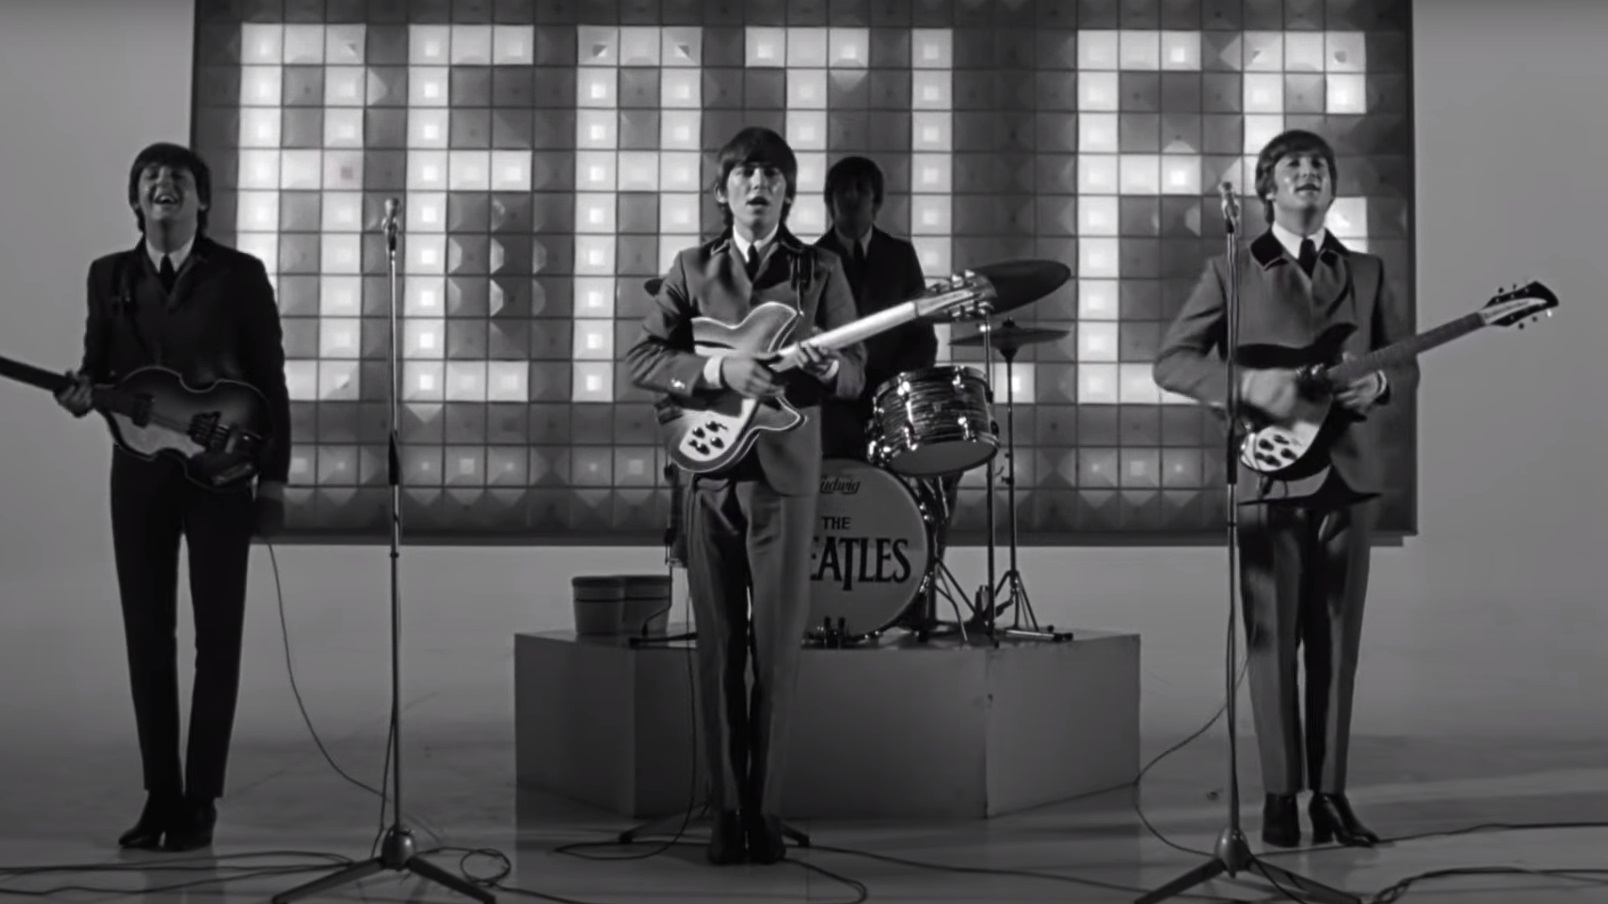 Στο βίντεο για το Now and Then οι Beatles είναι ξανά εδώ για ένα τελευταίο αντίο